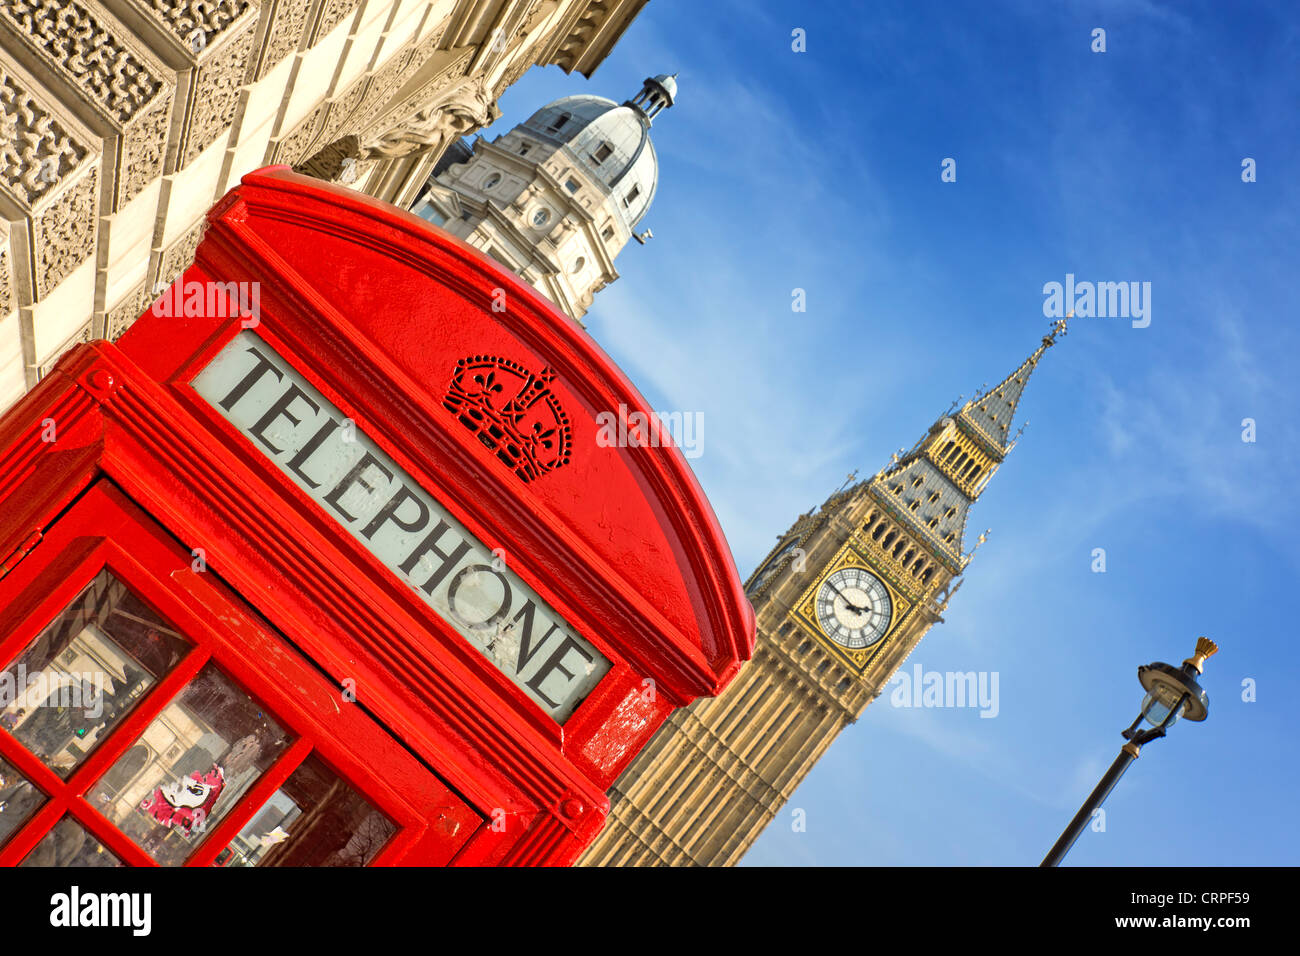 Une boîte de téléphone rouge et la tour de l'horloge connu sous le nom de Big Ben au Palais de Westminster. Banque D'Images